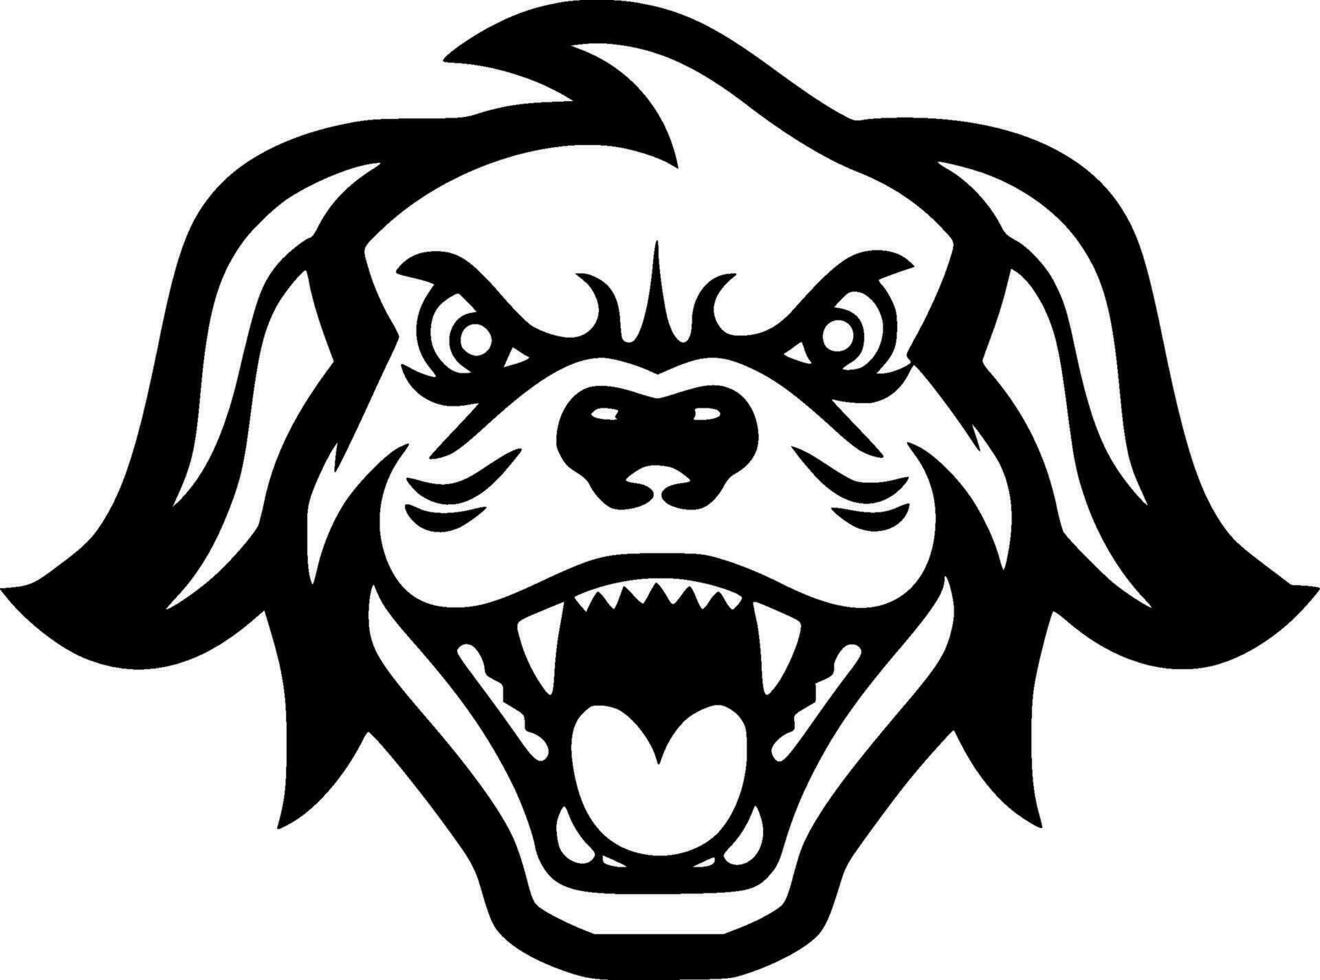 Hund - - minimalistisch und eben Logo - - Vektor Illustration